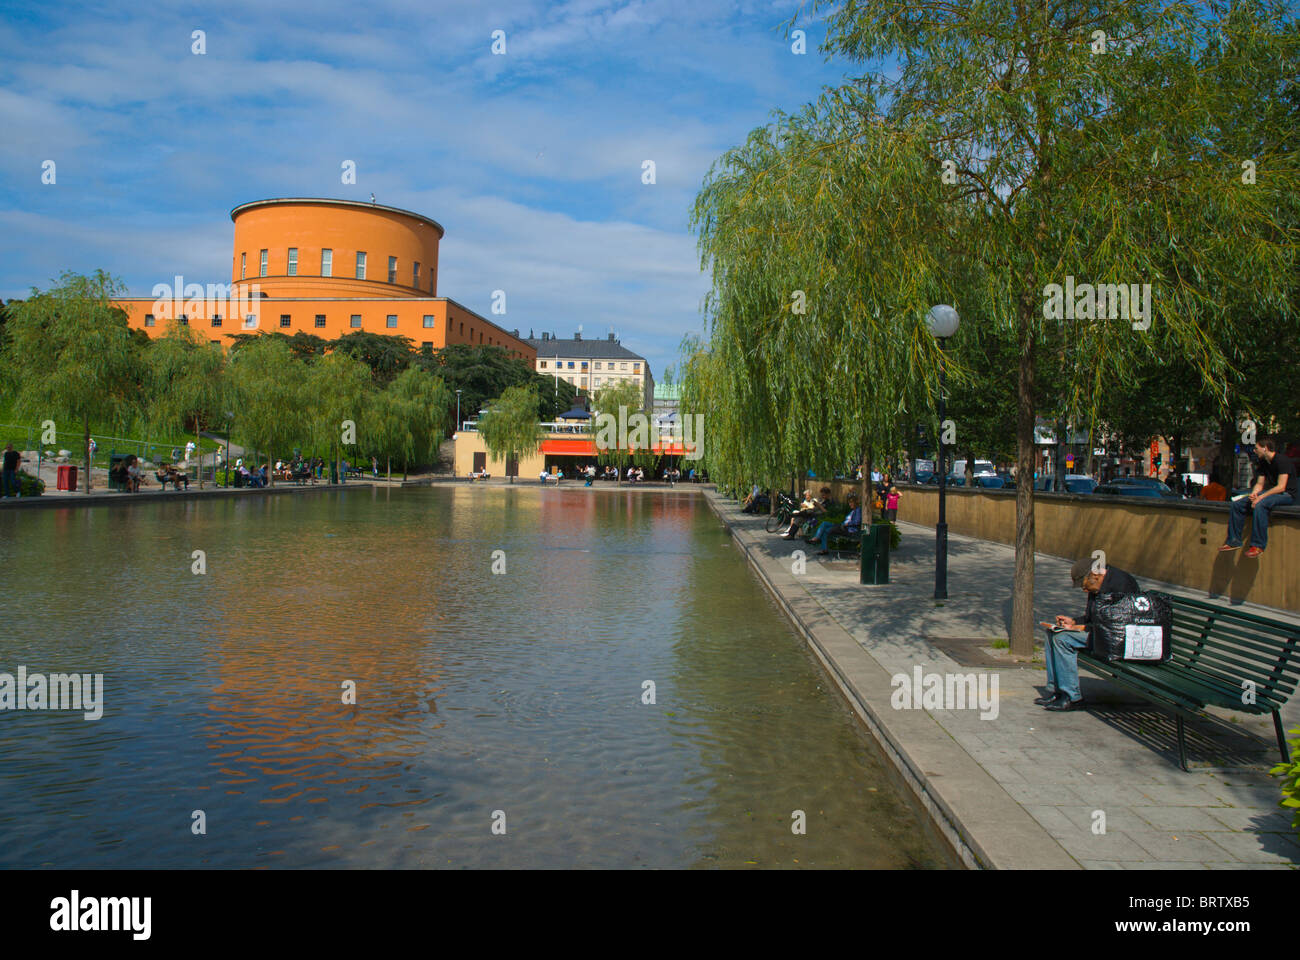 Piscina di acqua lungo Sveavägen Vasastaden centrale di Stoccolma Svezia Europa Foto Stock